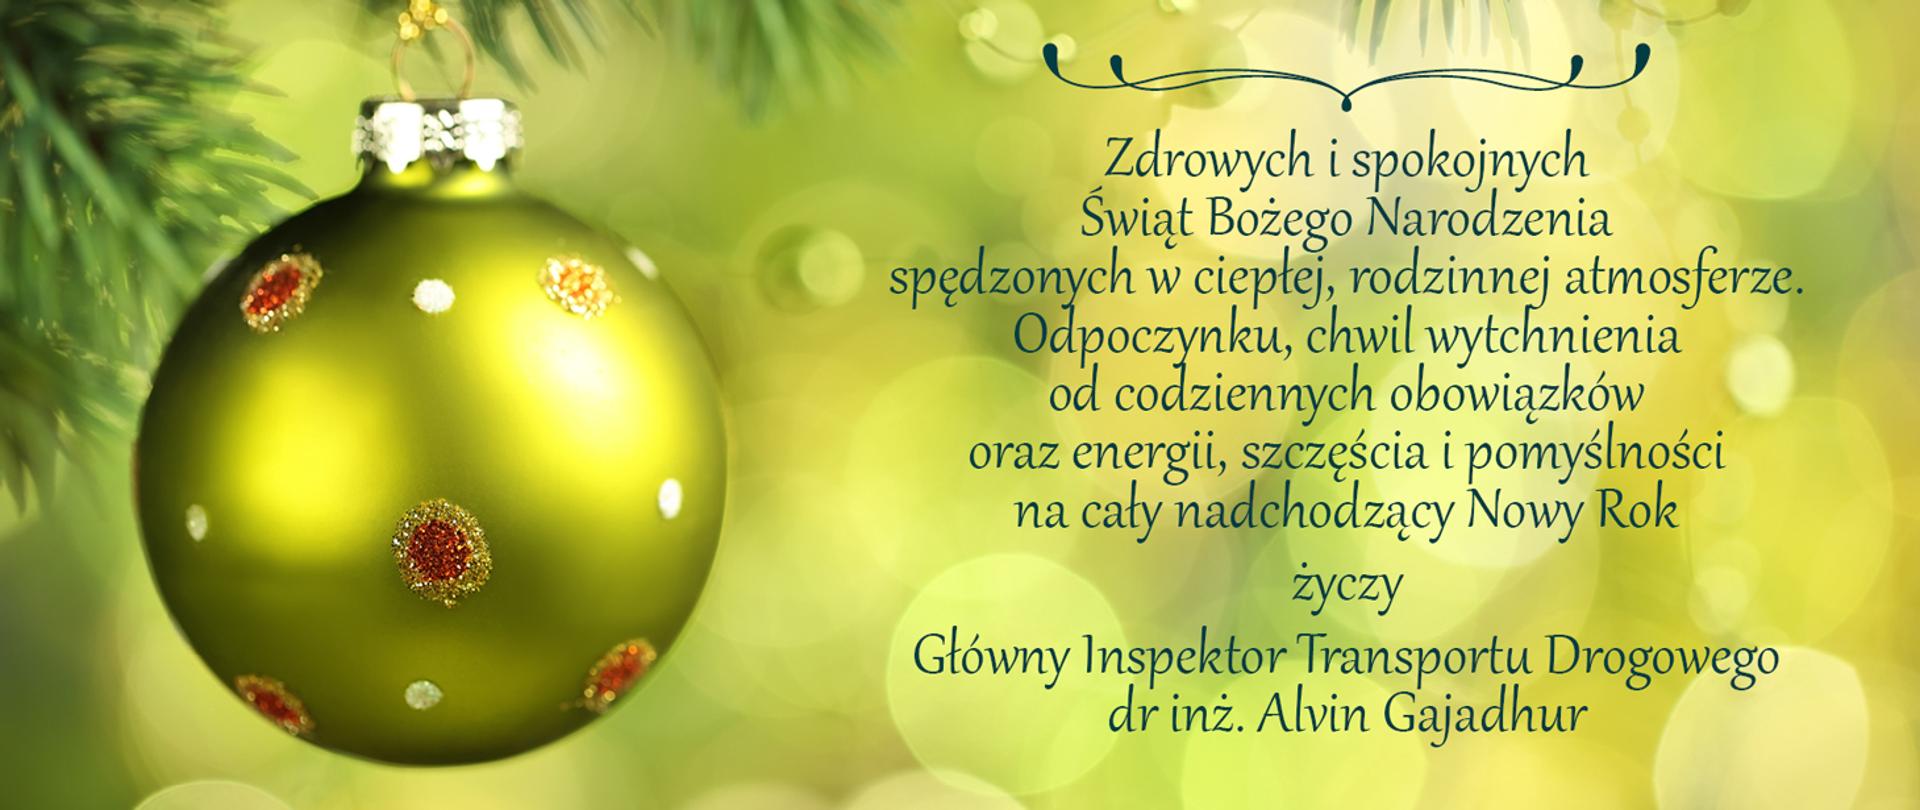 Życzenia Głównego Inspektora Transportu Drogowego Alvina Gajadhura na Święta Bożego Narodzenia i 2023 rok
